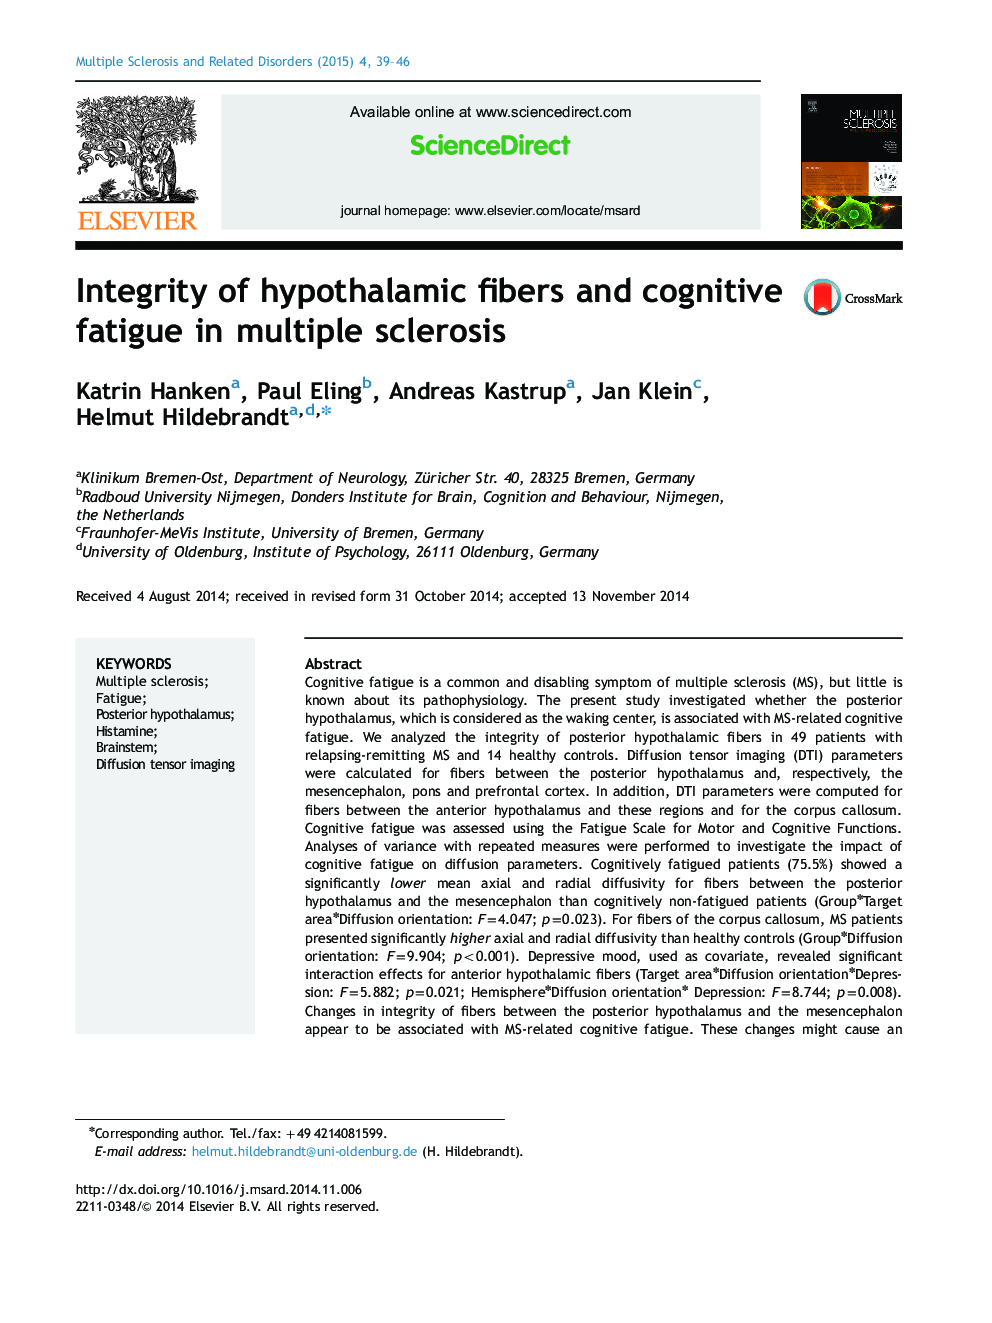 یکپارچگی فیبرهای هیپوتالامیک و خستگی شناختی در مولتیپل اسکلروزیس 